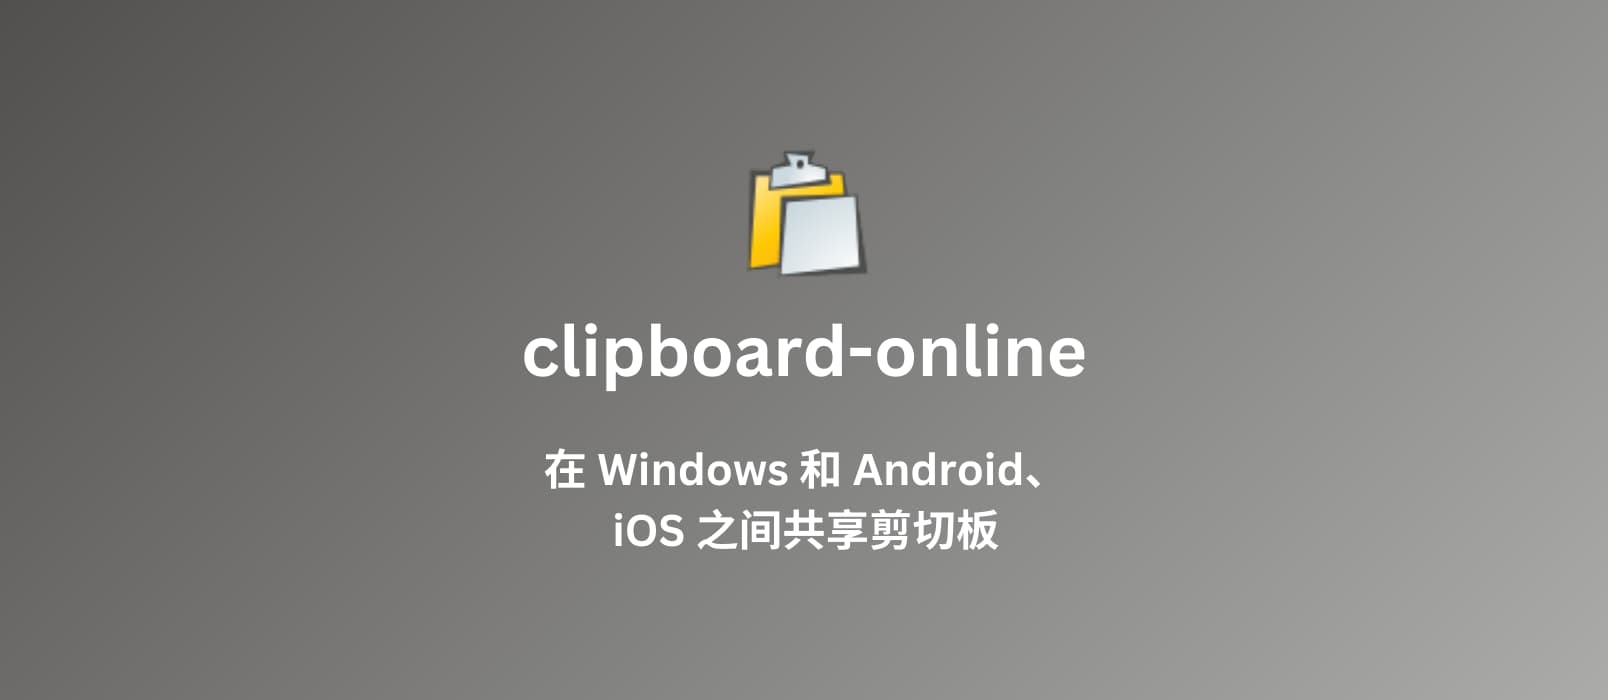 clipboard-online - 在 Windows 和 iOS、Android 之间分享剪切板